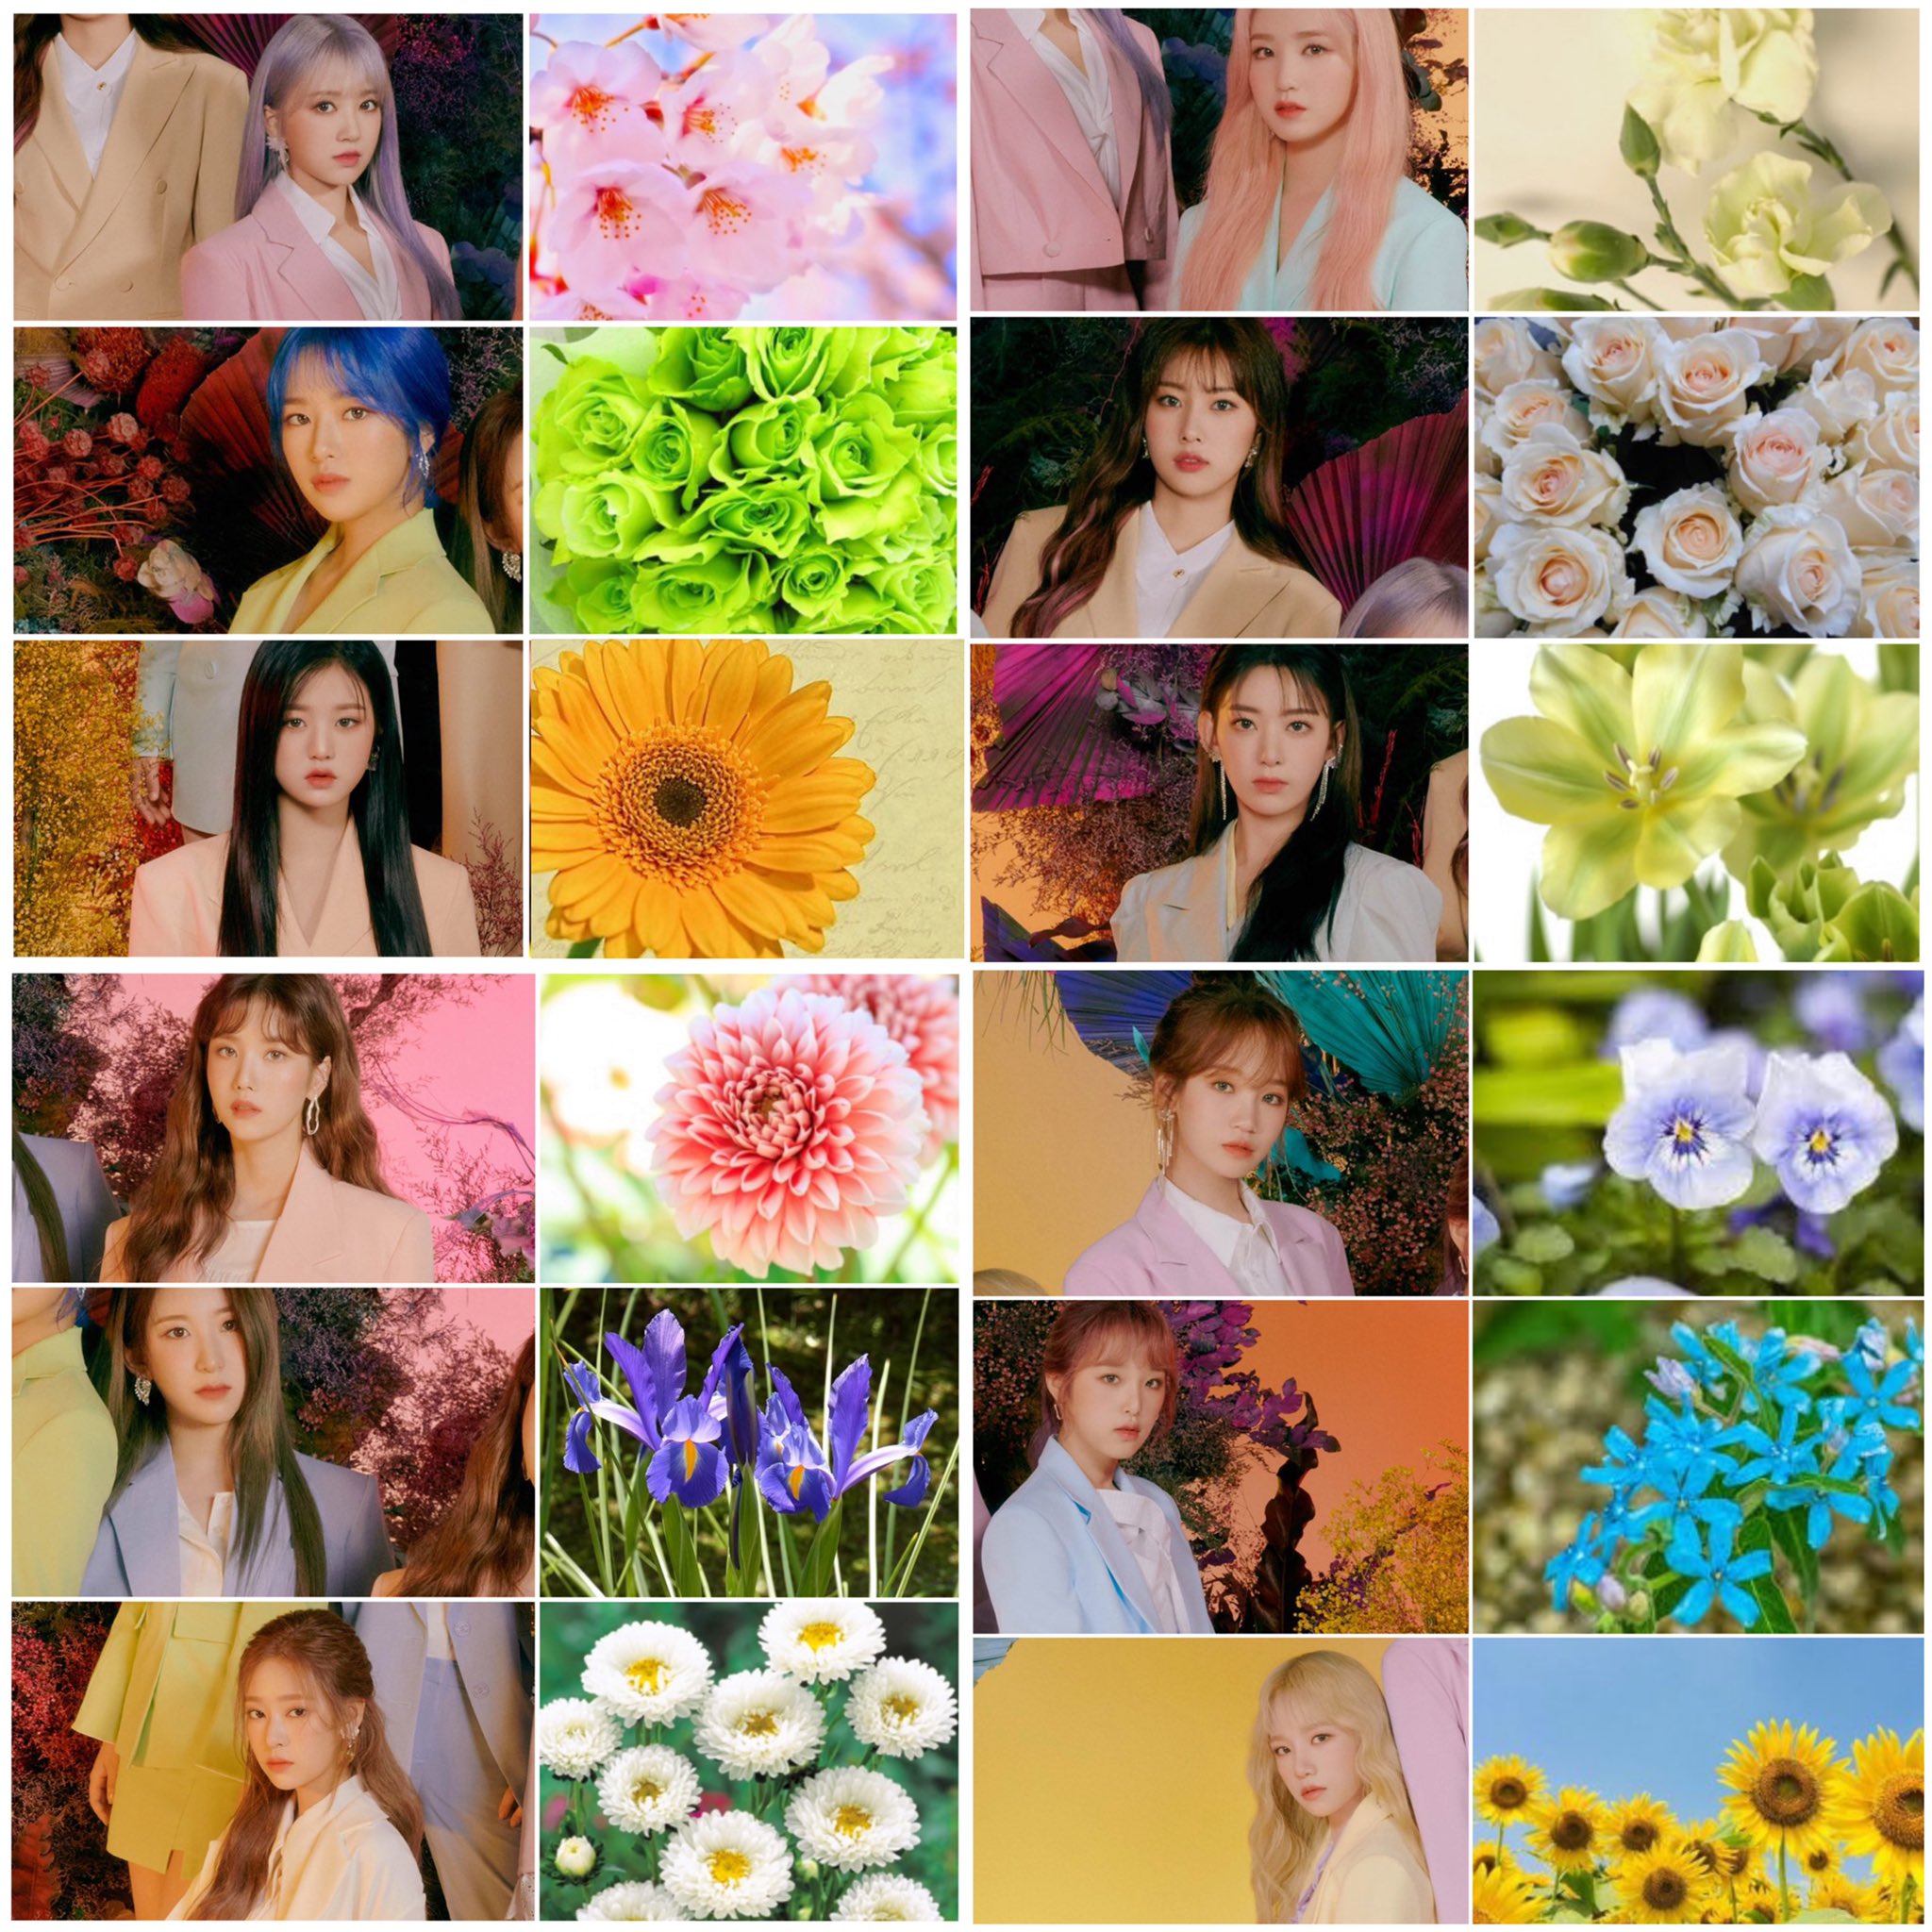 Eam Izoneのfiestaをイメージして さっきあげた動画の続きで イラストの花には全部花言葉 があり それぞれの衣装の色に合わせて それぞれみんなのイメージ似合う花を描きました みんなが笑顔でカムバできますように Izone Fiesta Wizone